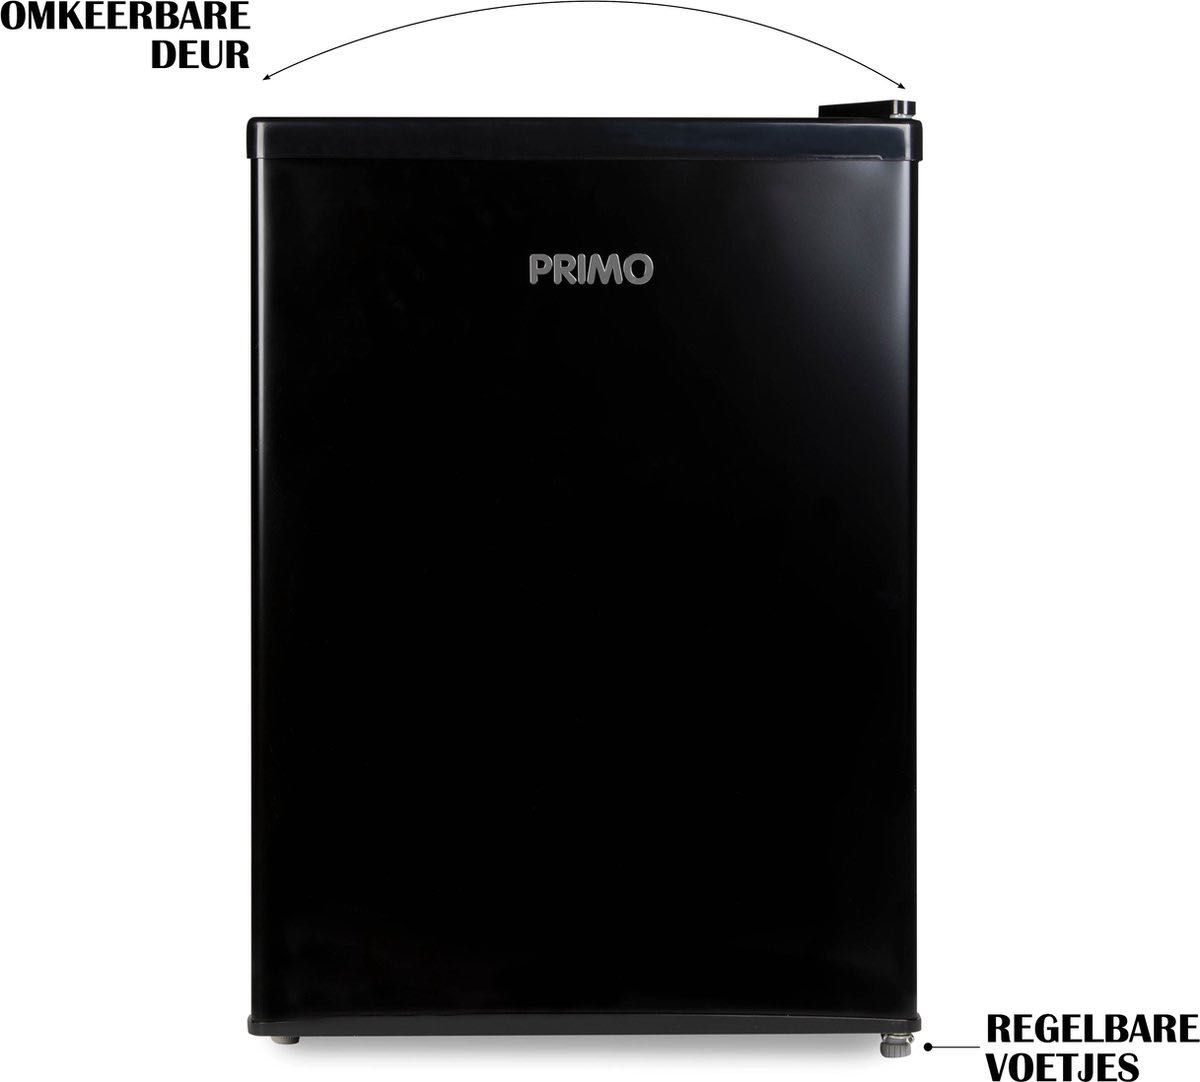 Хладилник с камера PRIMO 65 л.